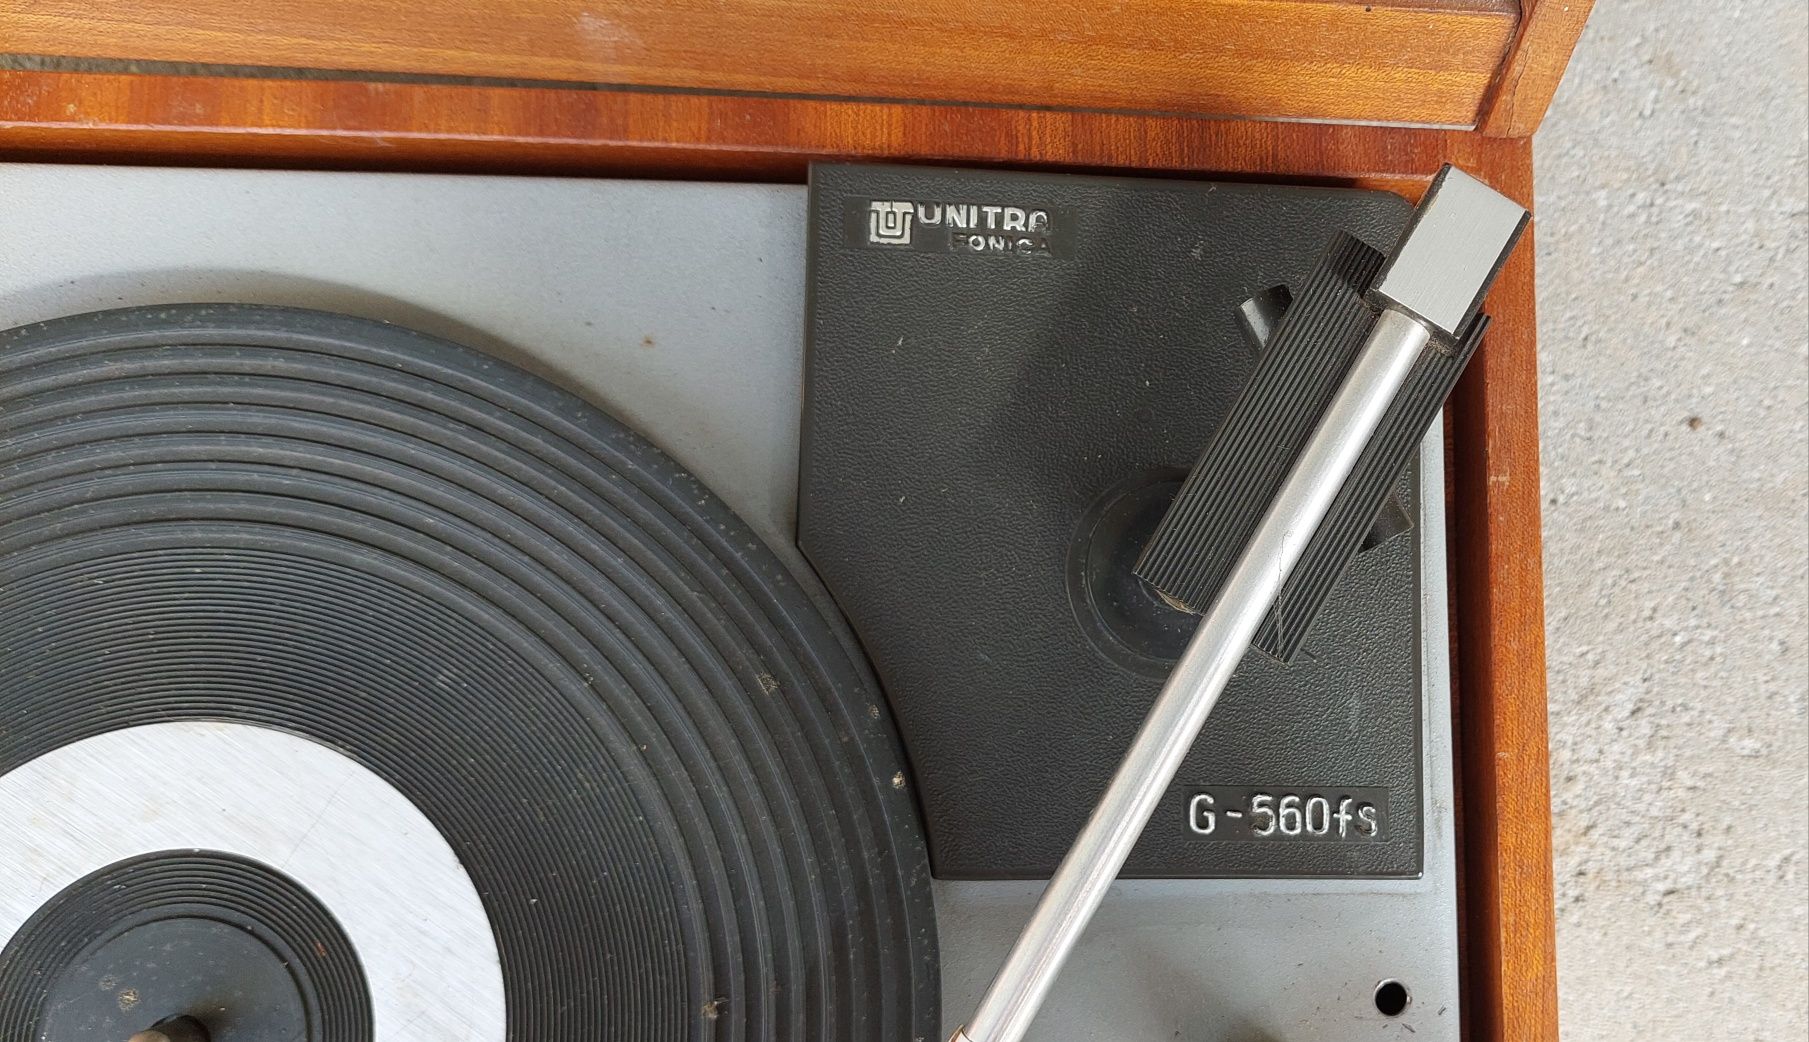 Gramofon Unitra Fonika G 560 FS